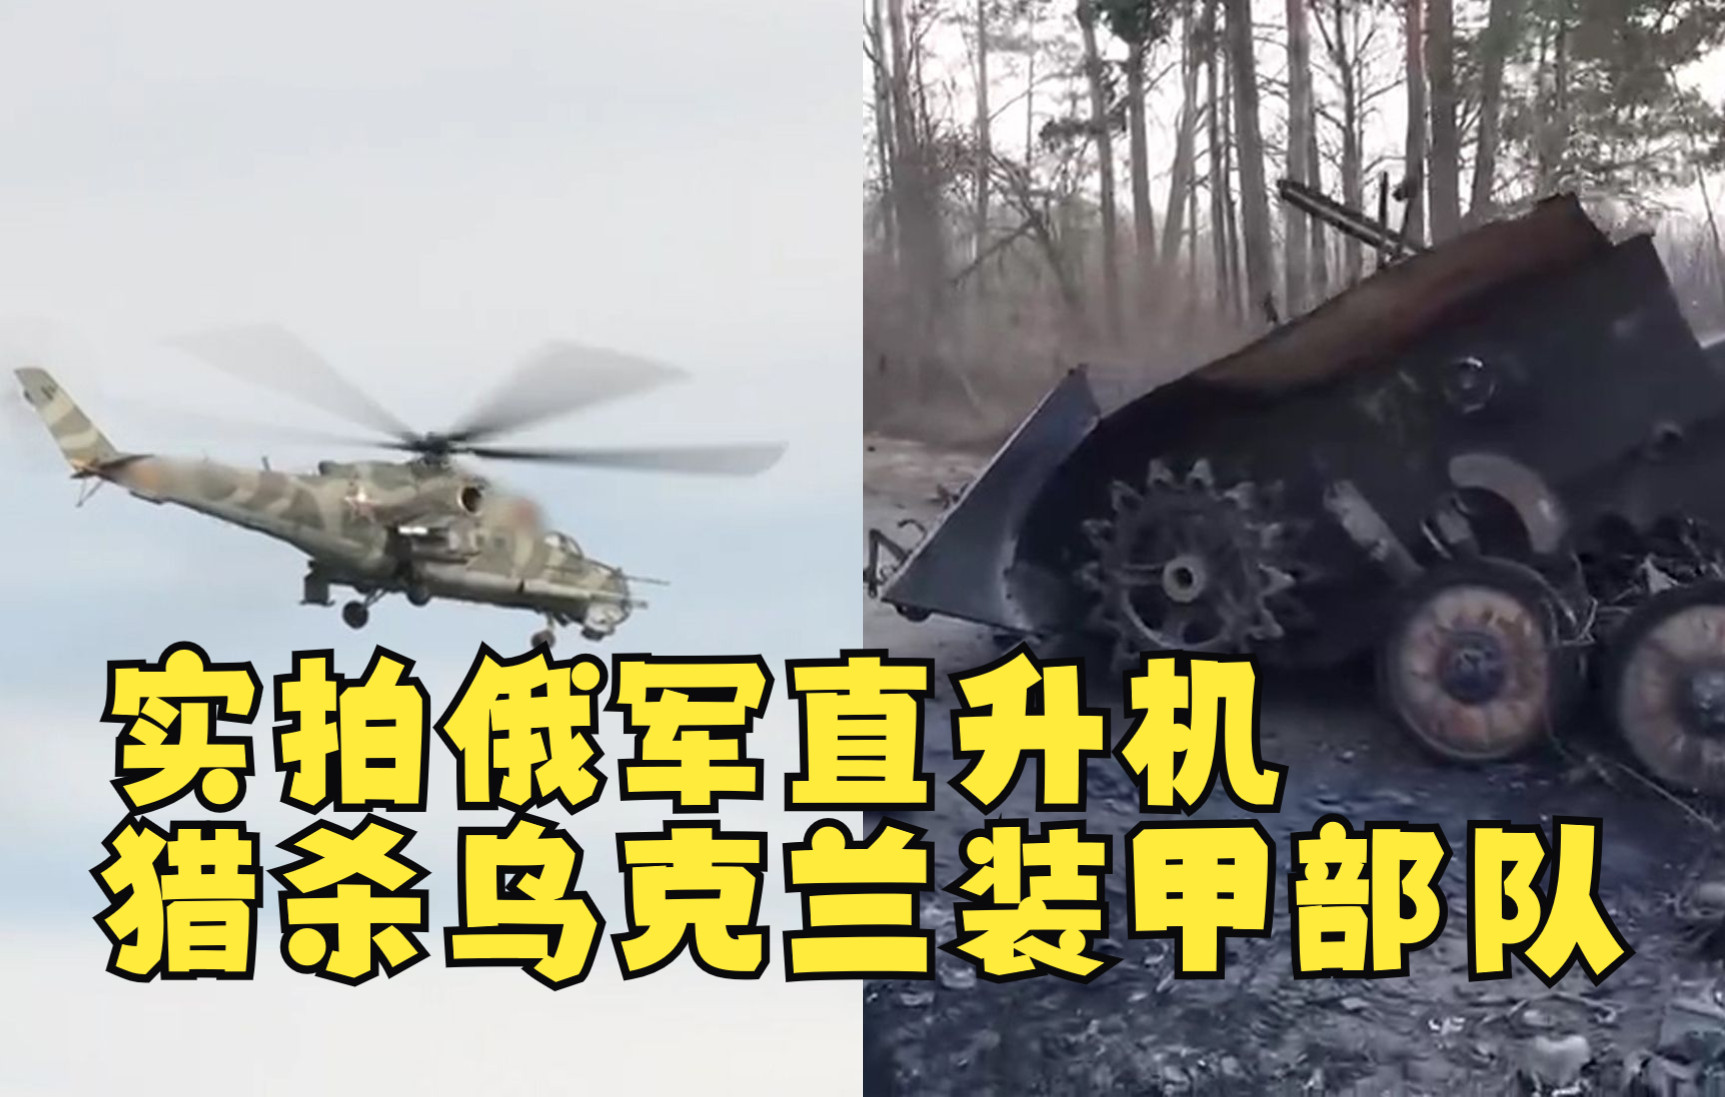 实拍俄军直升机猎杀乌克兰装甲部队